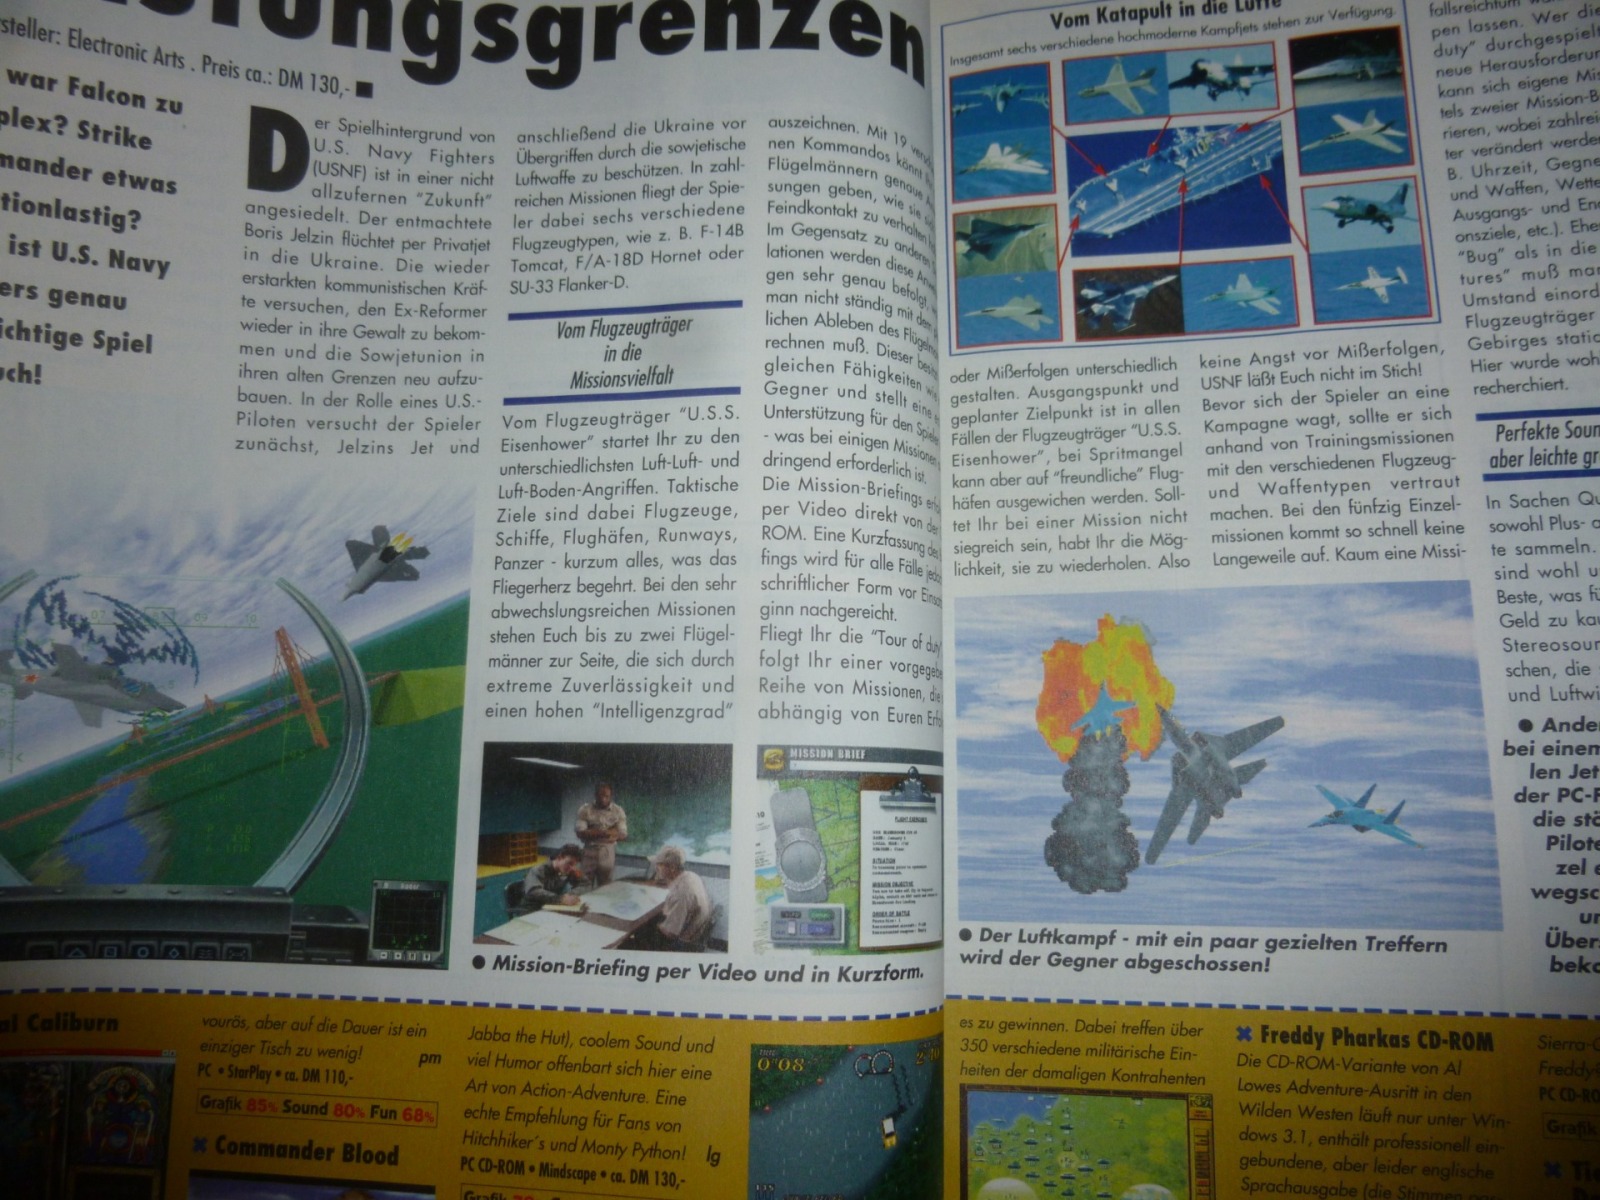 Play Time - Das Computer- und Videospiele-Magazin - Ausgabe 2/95 1995 11